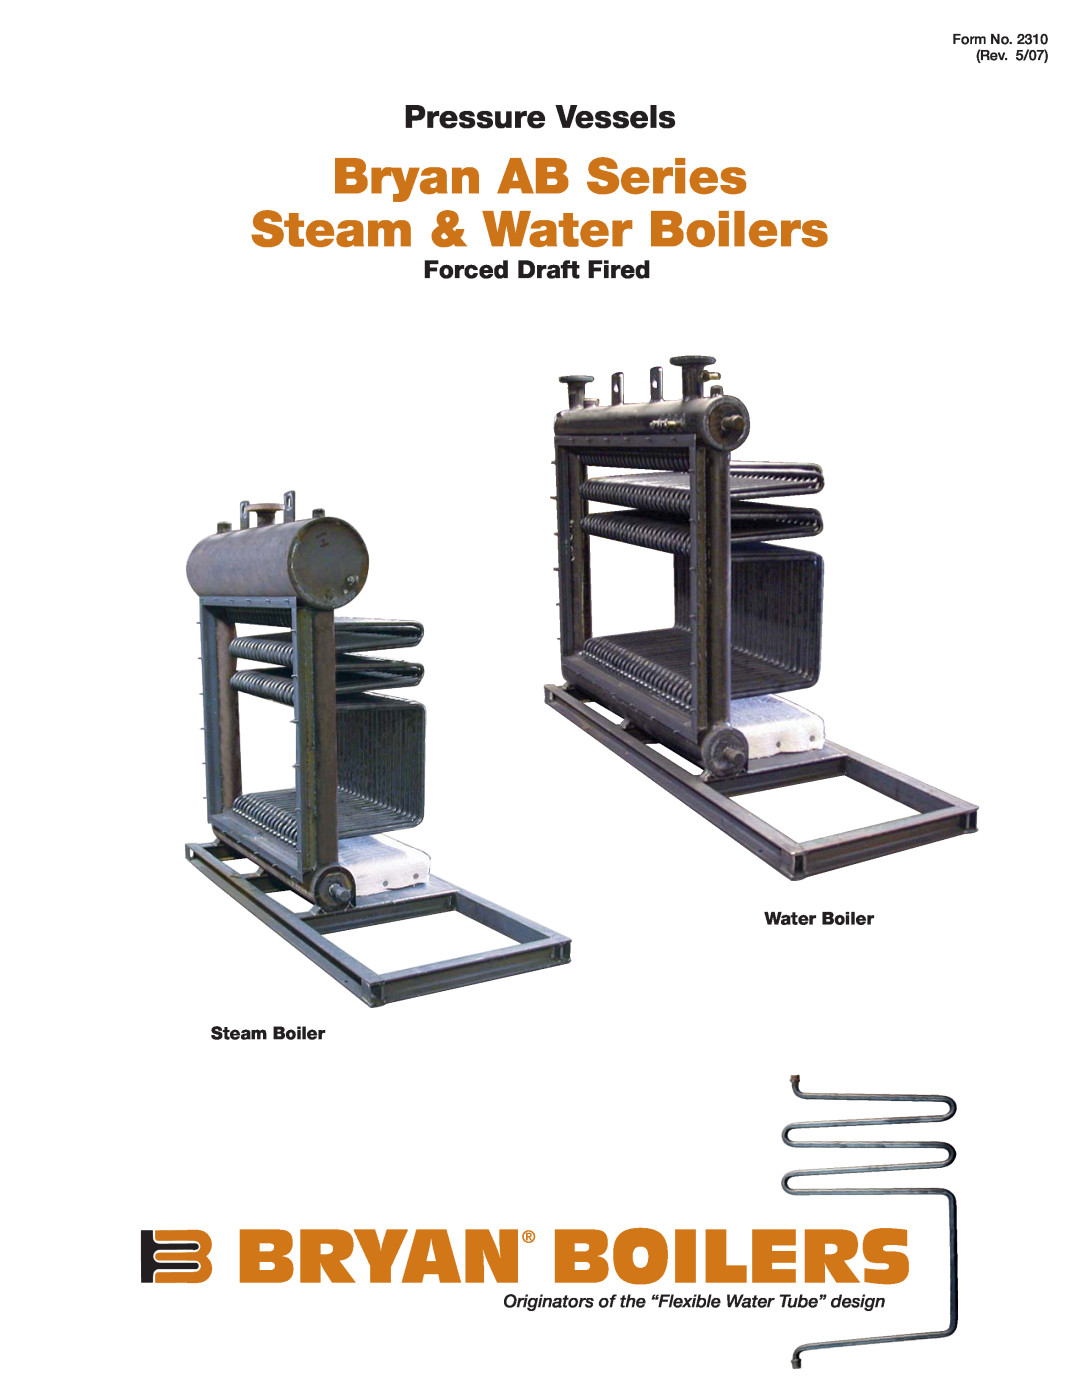 Bryan Boilers AB Series manual Water Boiler Steam Boiler, Form No. 2310 Rev. 5/07, Bryan Boilers, Pressure Vessels 